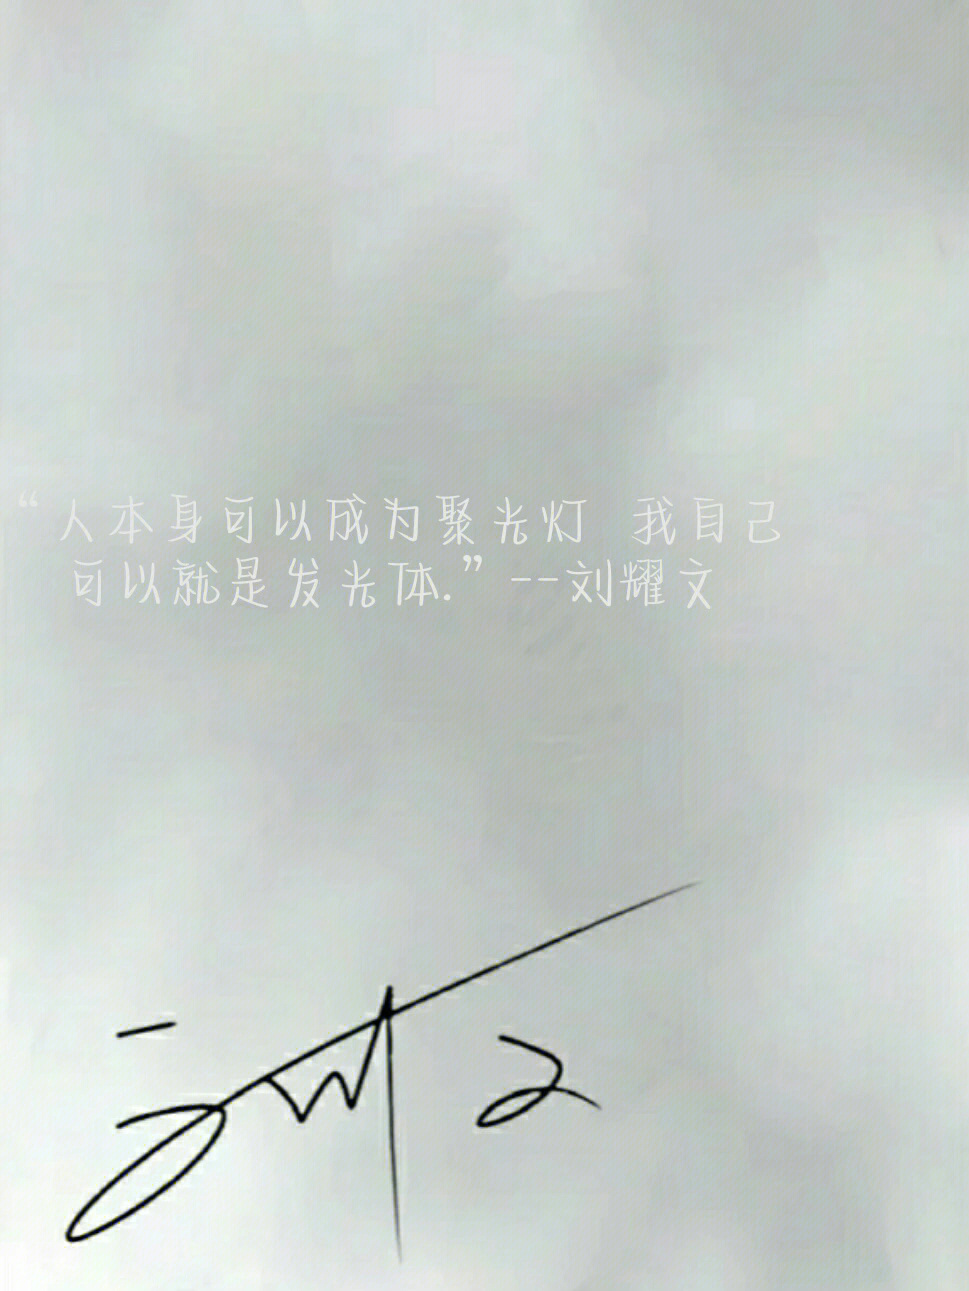 刘耀文语录壁纸文案图片